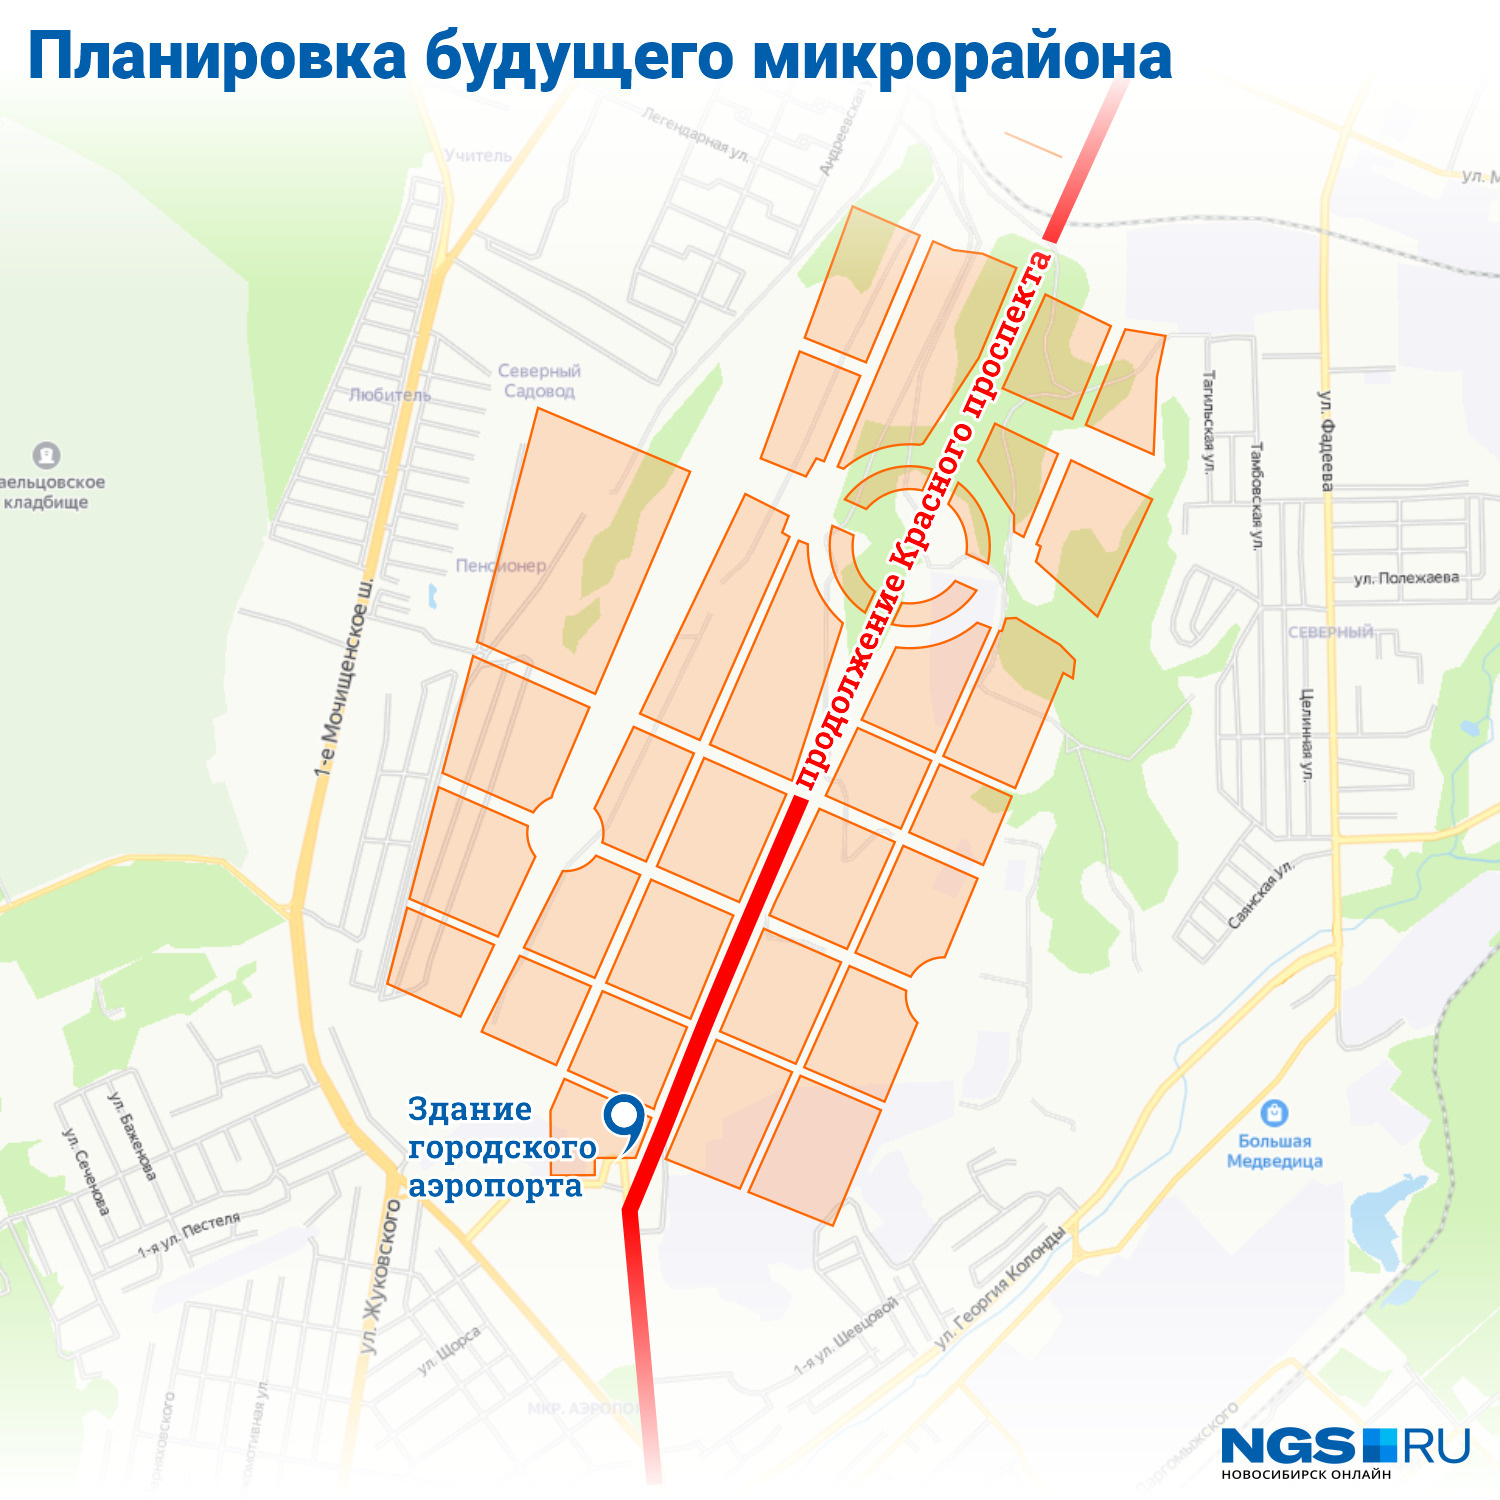 Сегодня генплан города накладывается на территорию большими кварталами, но все выезды из нее упираются в улицу Жуковского и в Красный проспект